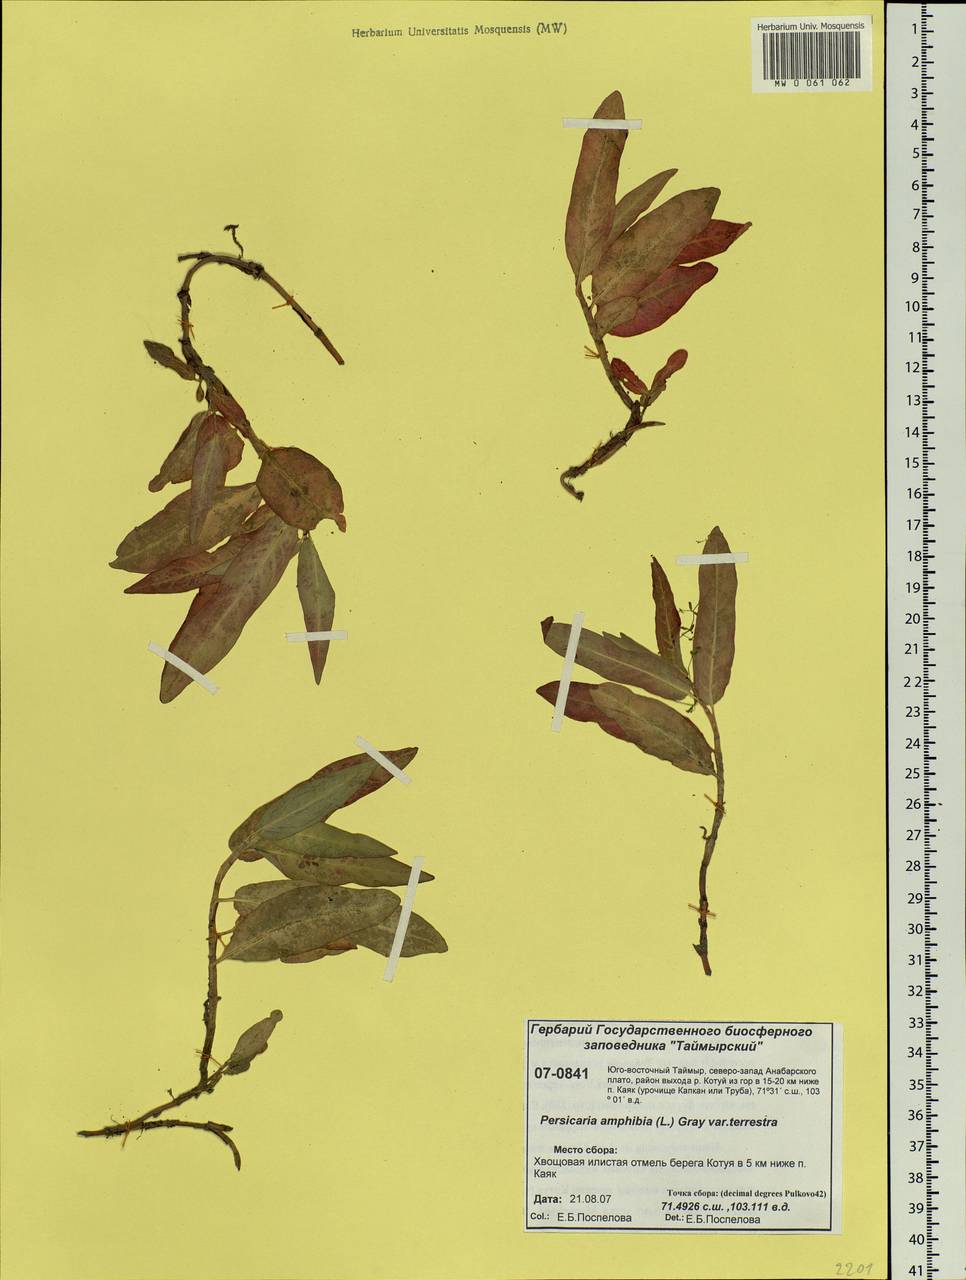 Persicaria amphibia (L.) Gray, Siberia, Central Siberia (S3) (Russia)